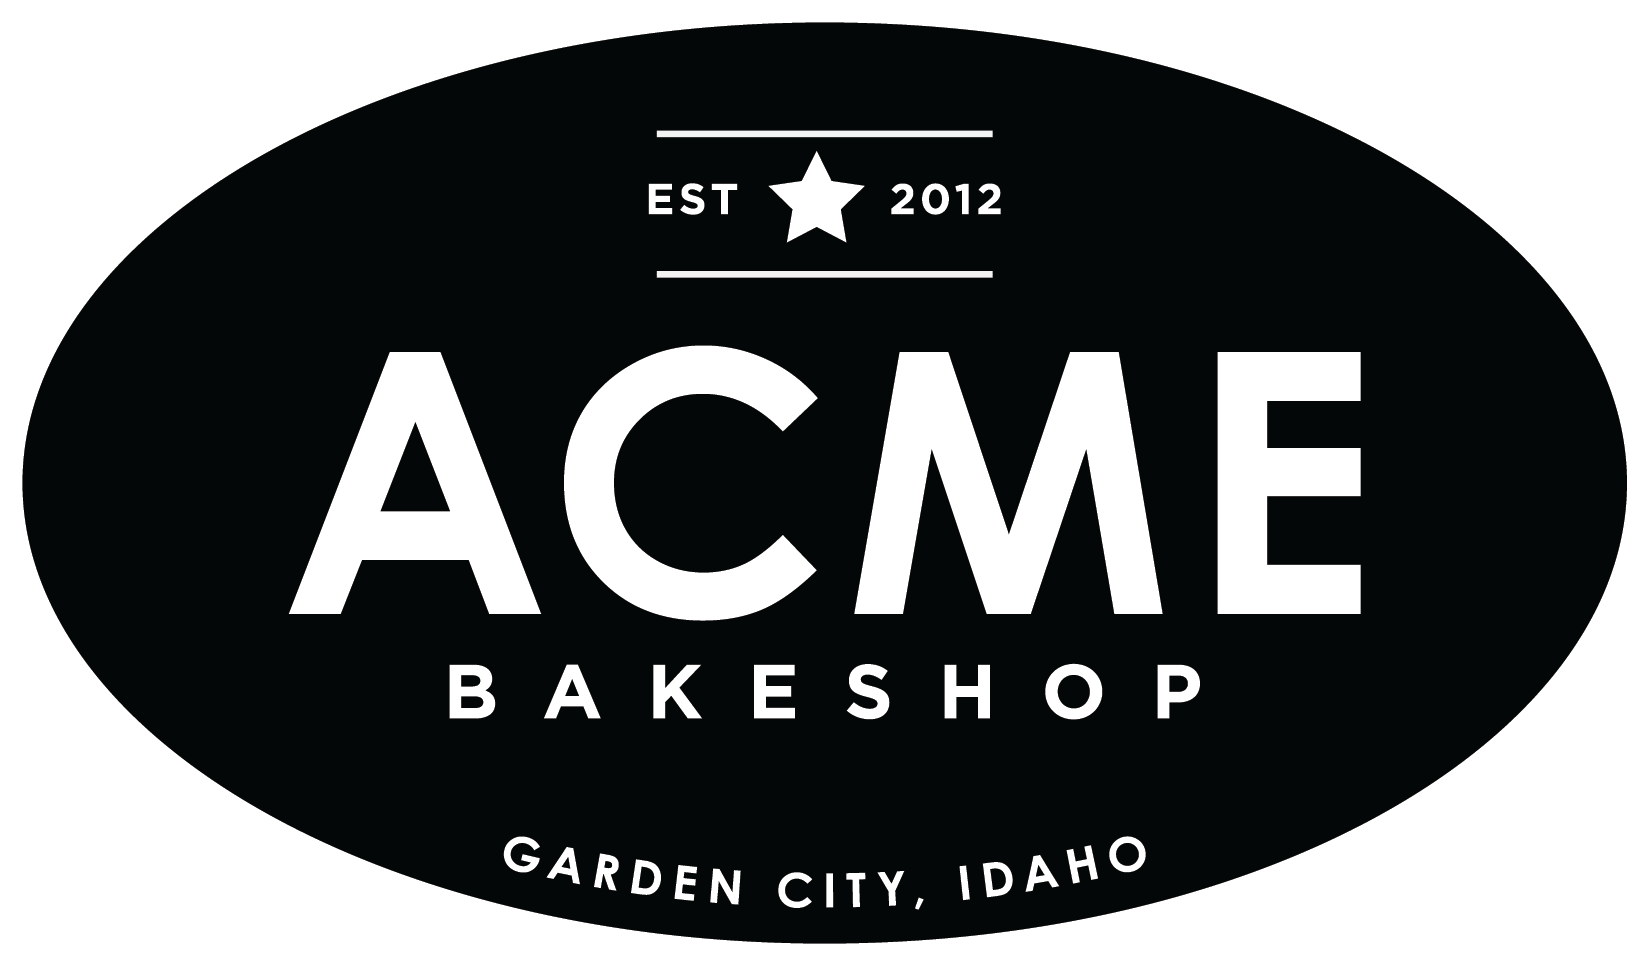 Acme Bakeshop